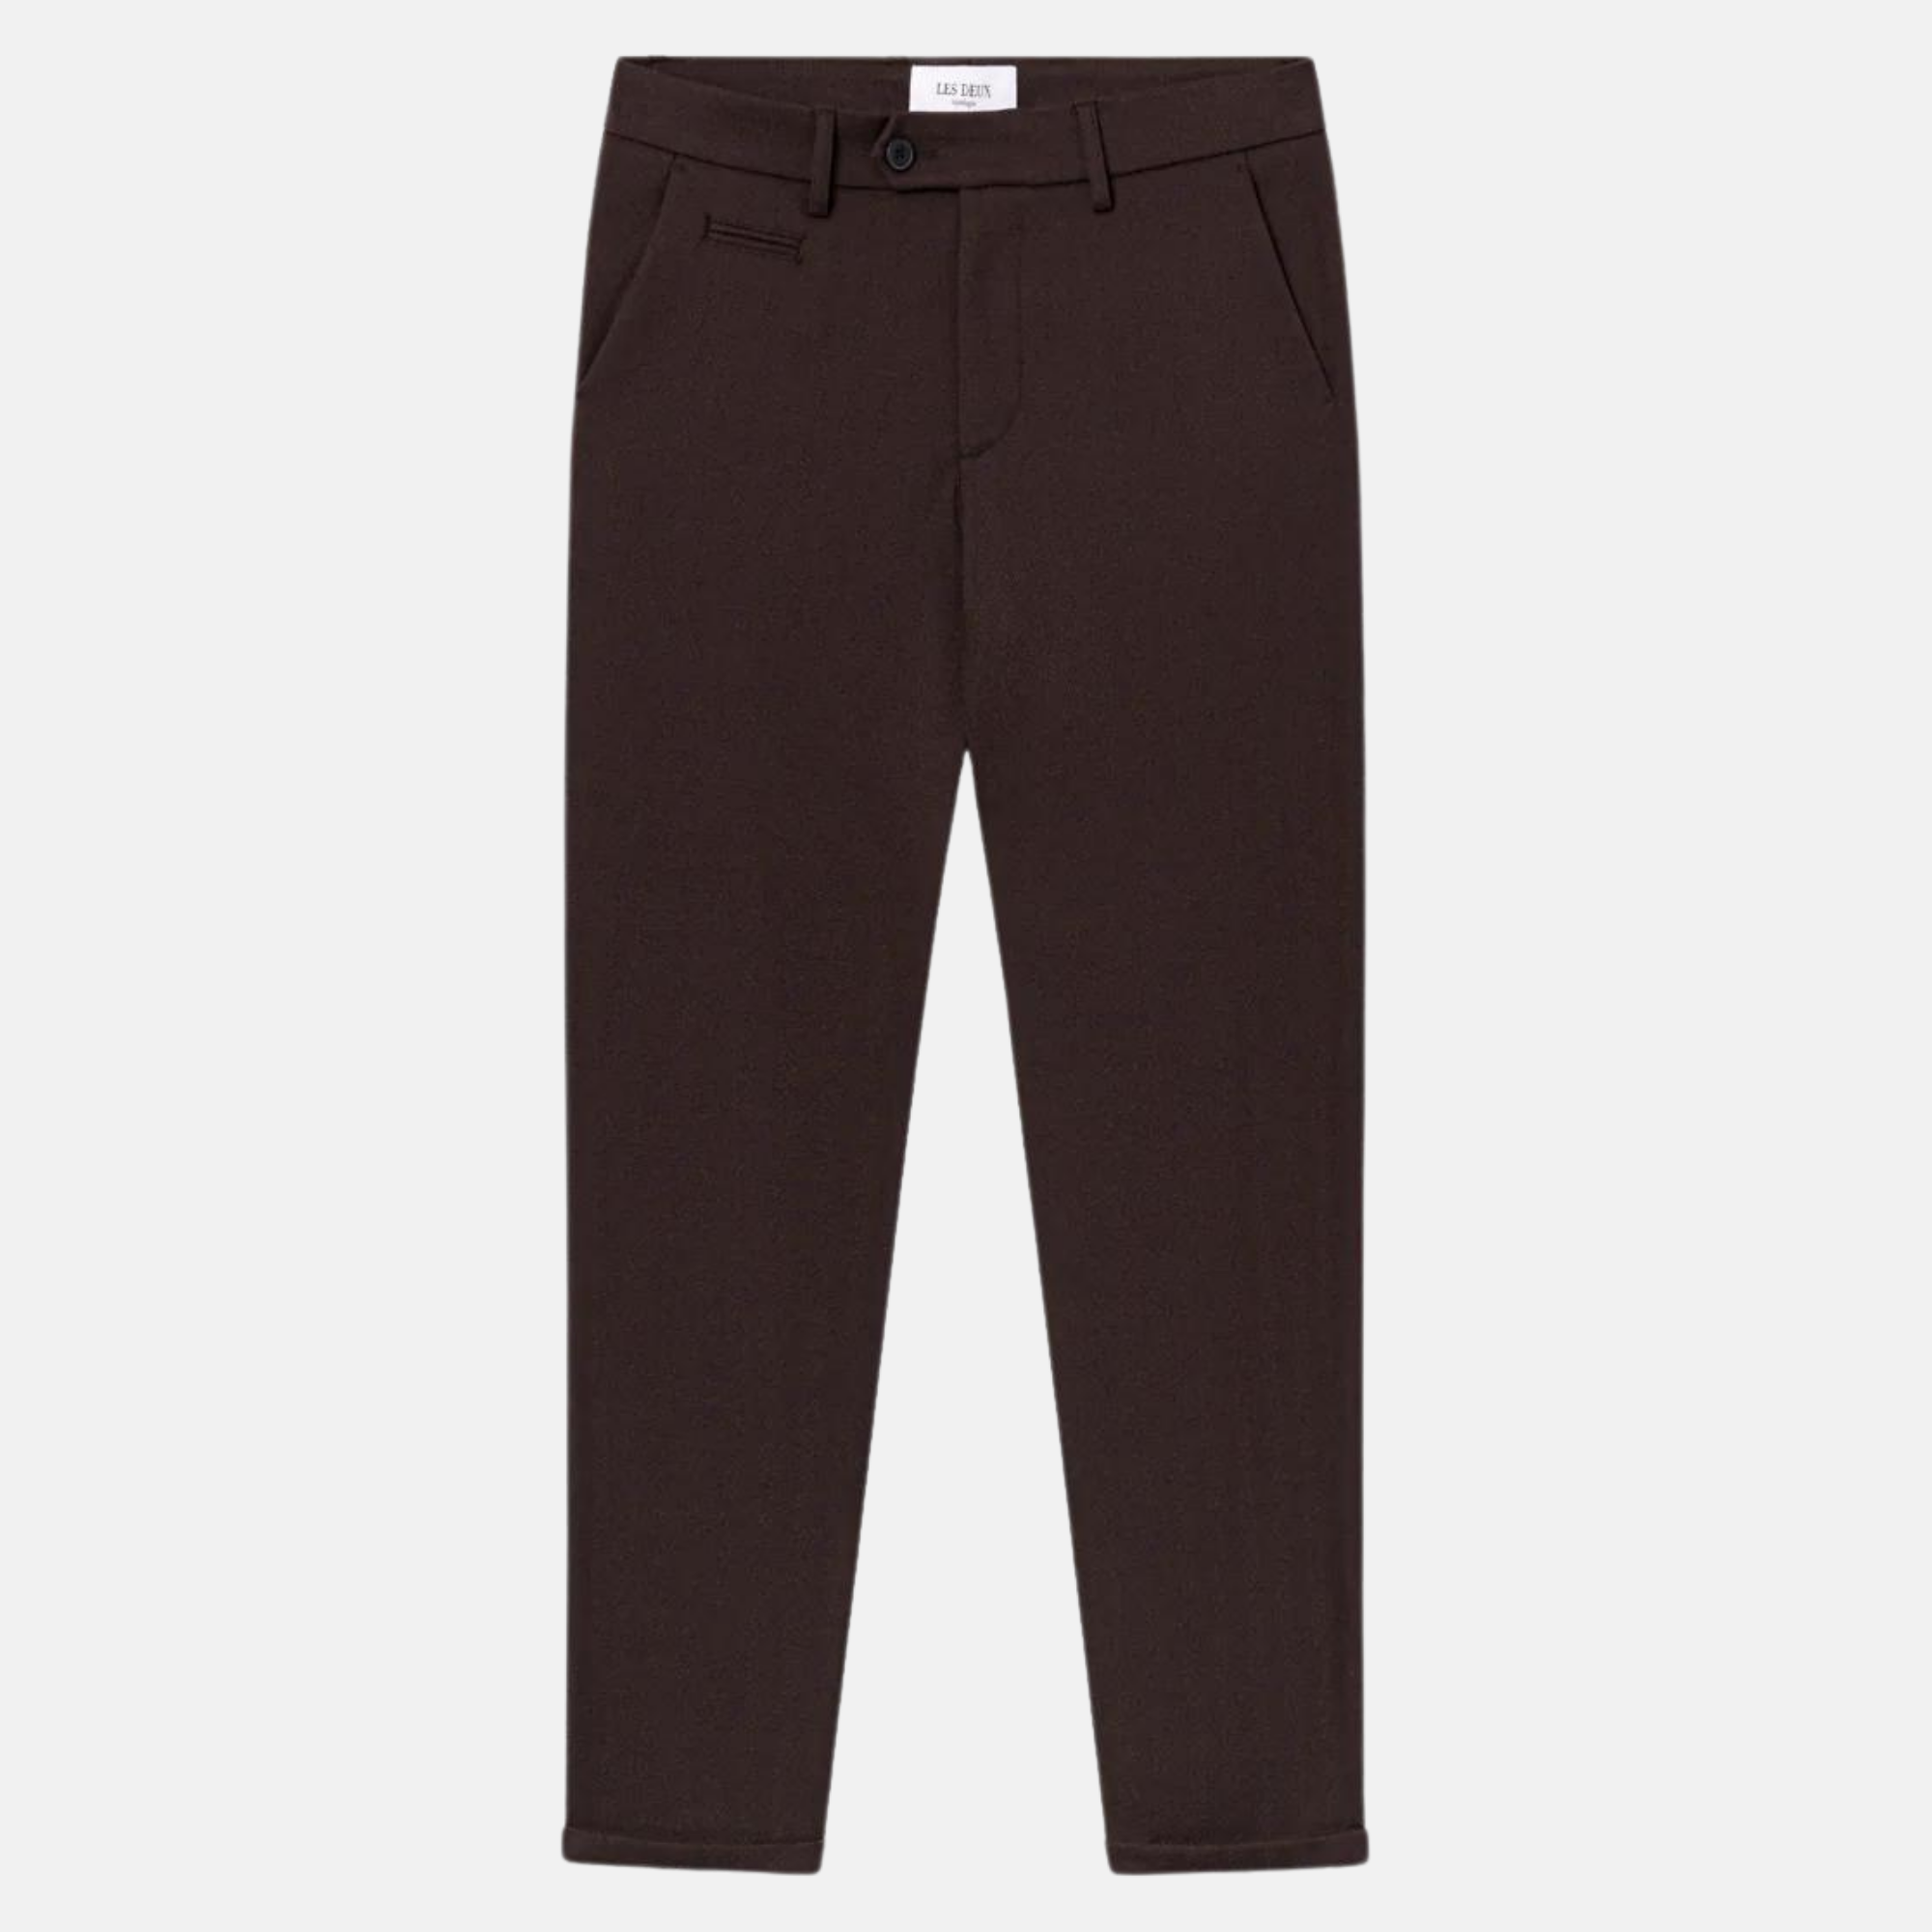 Pantalon de cuisine homme noir - T36 - 35% coton 65% polyester